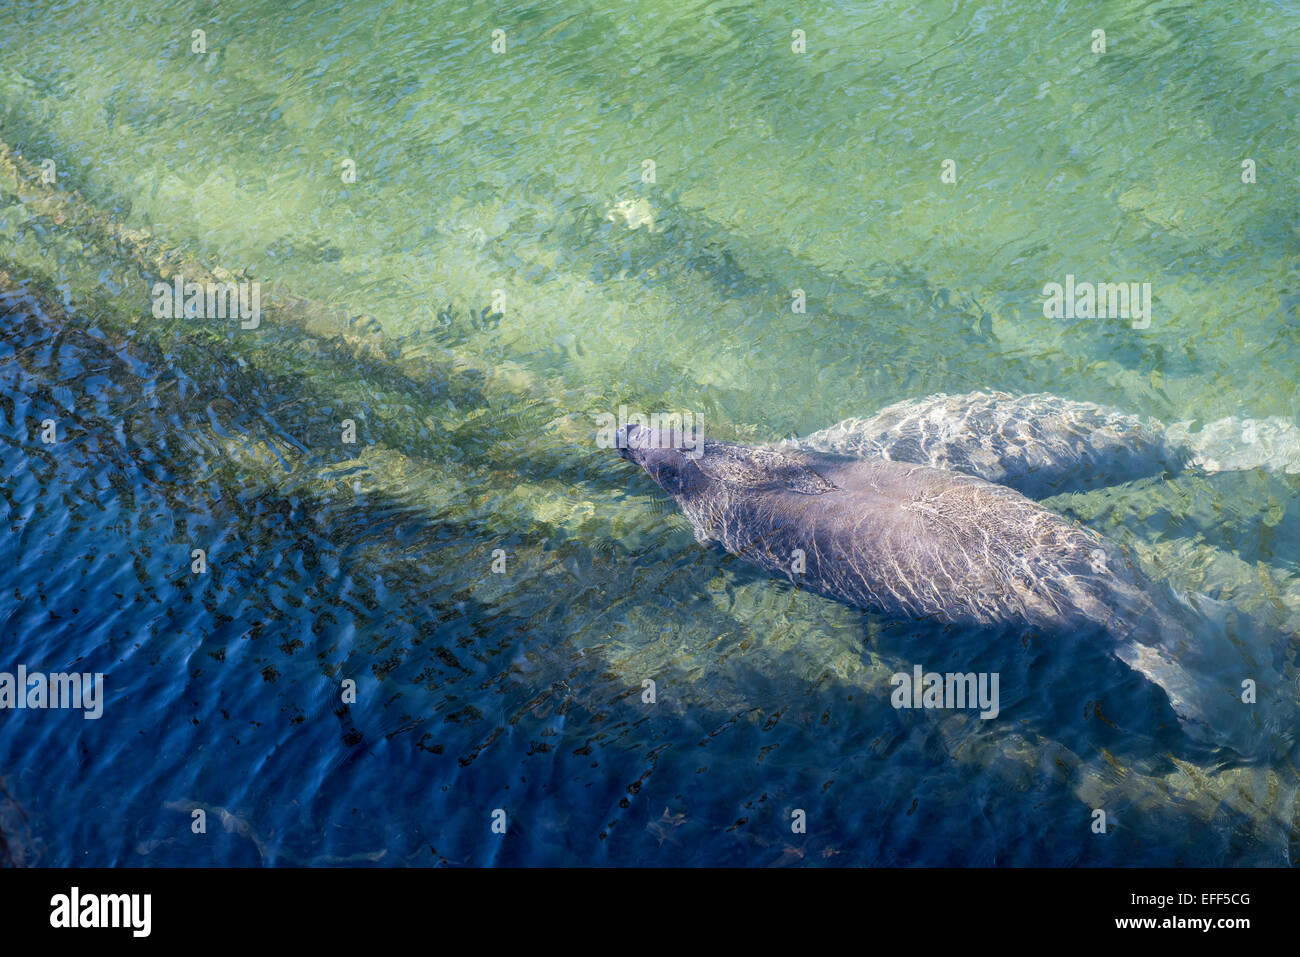 Manatee auftauchen zum Atem von oben in das klare Wasser der Blue Spring State Park, Florida gesehen. Stockfoto